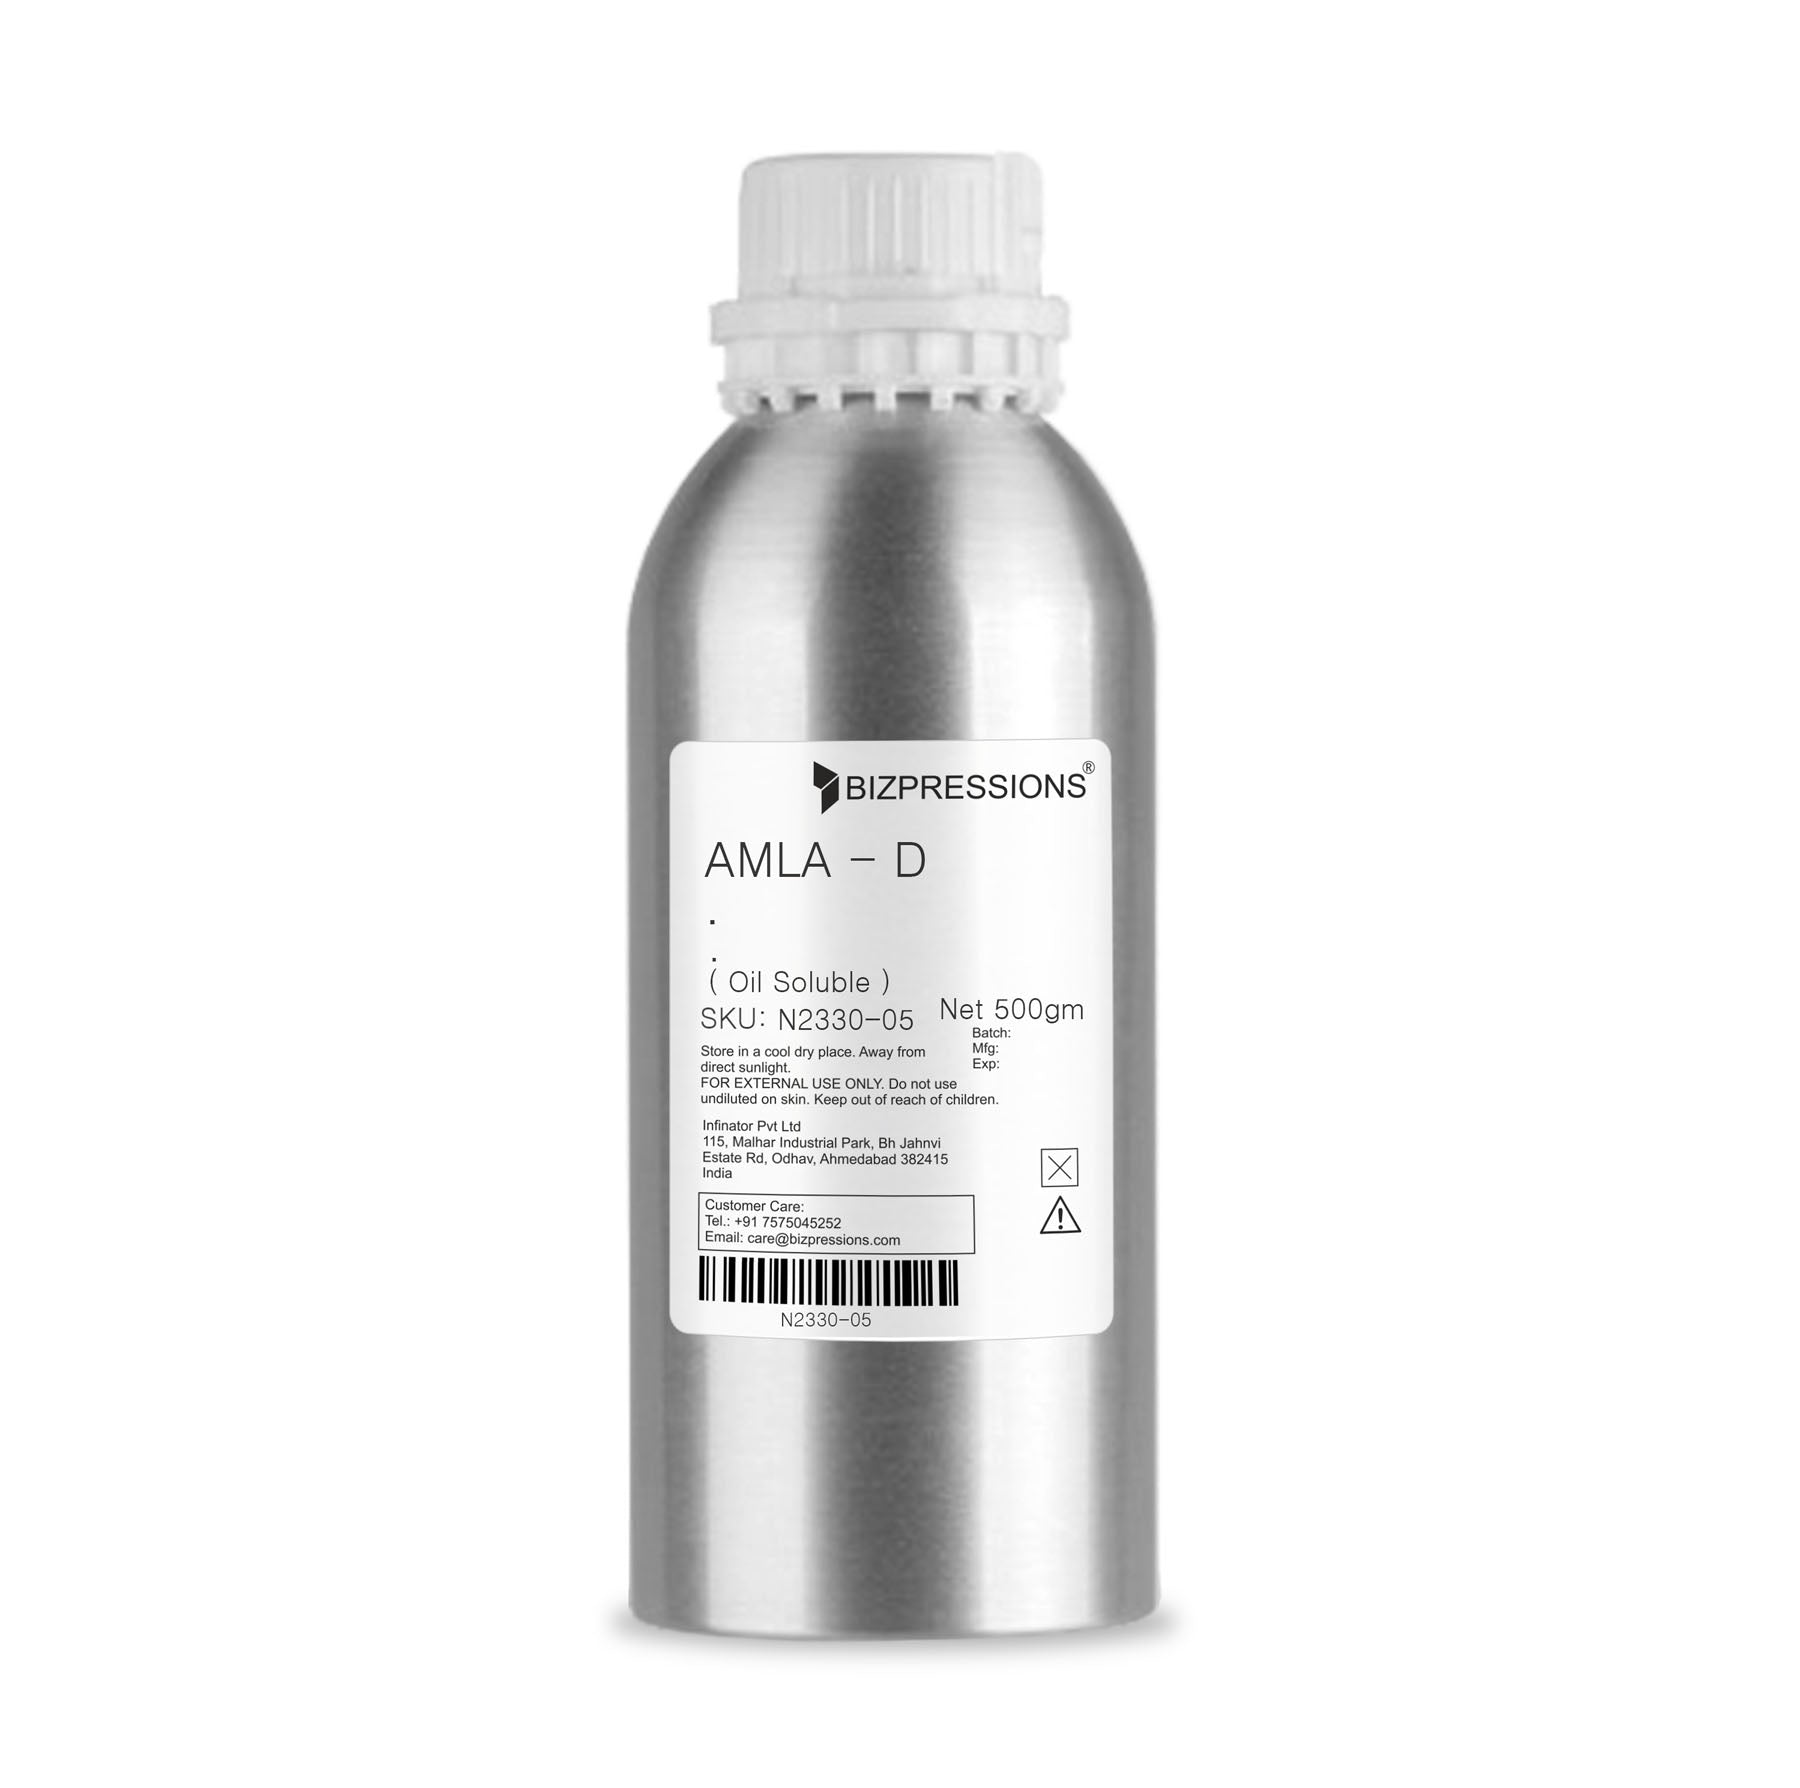 AMLA - D - Fragrance ( Oil Soluble ) - 500 gm